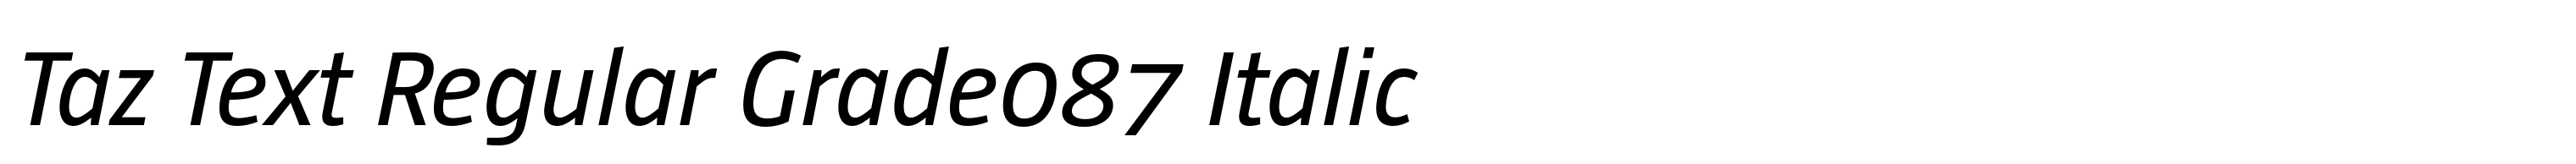 Taz Text Regular Grade087 Italic